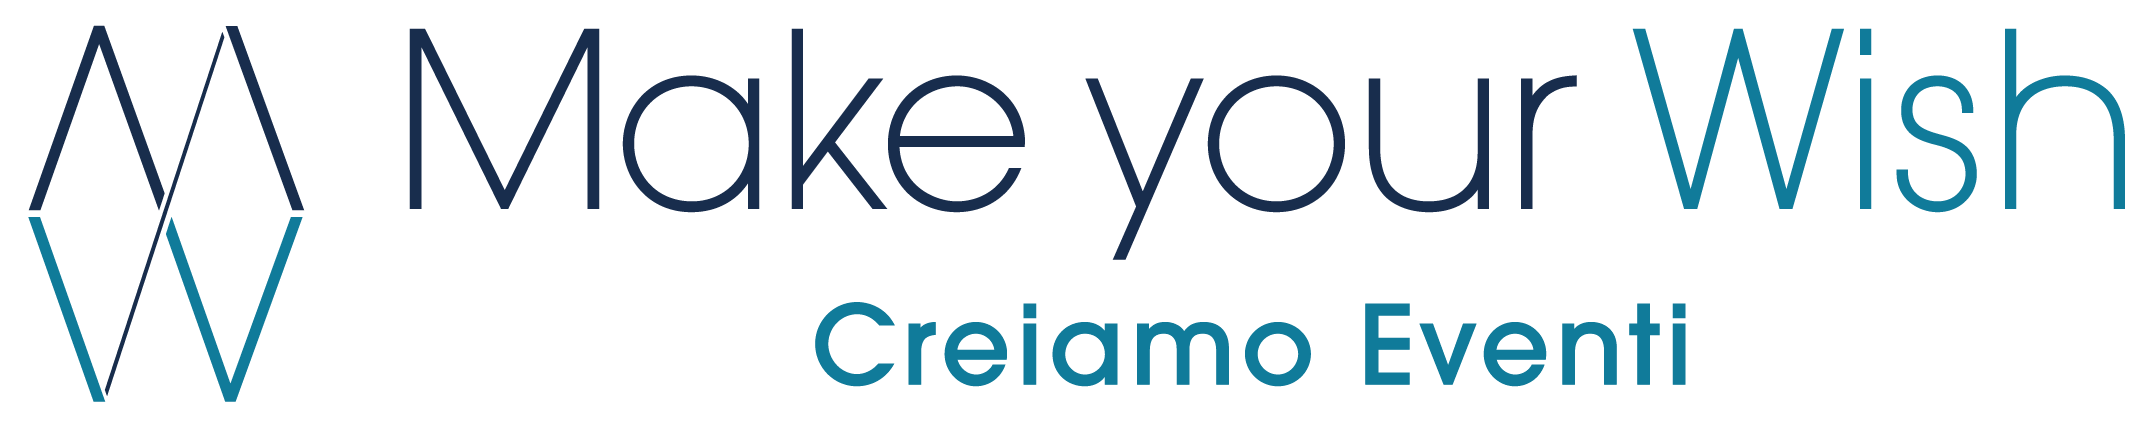 Make Your Wish - Creiamo Eventi